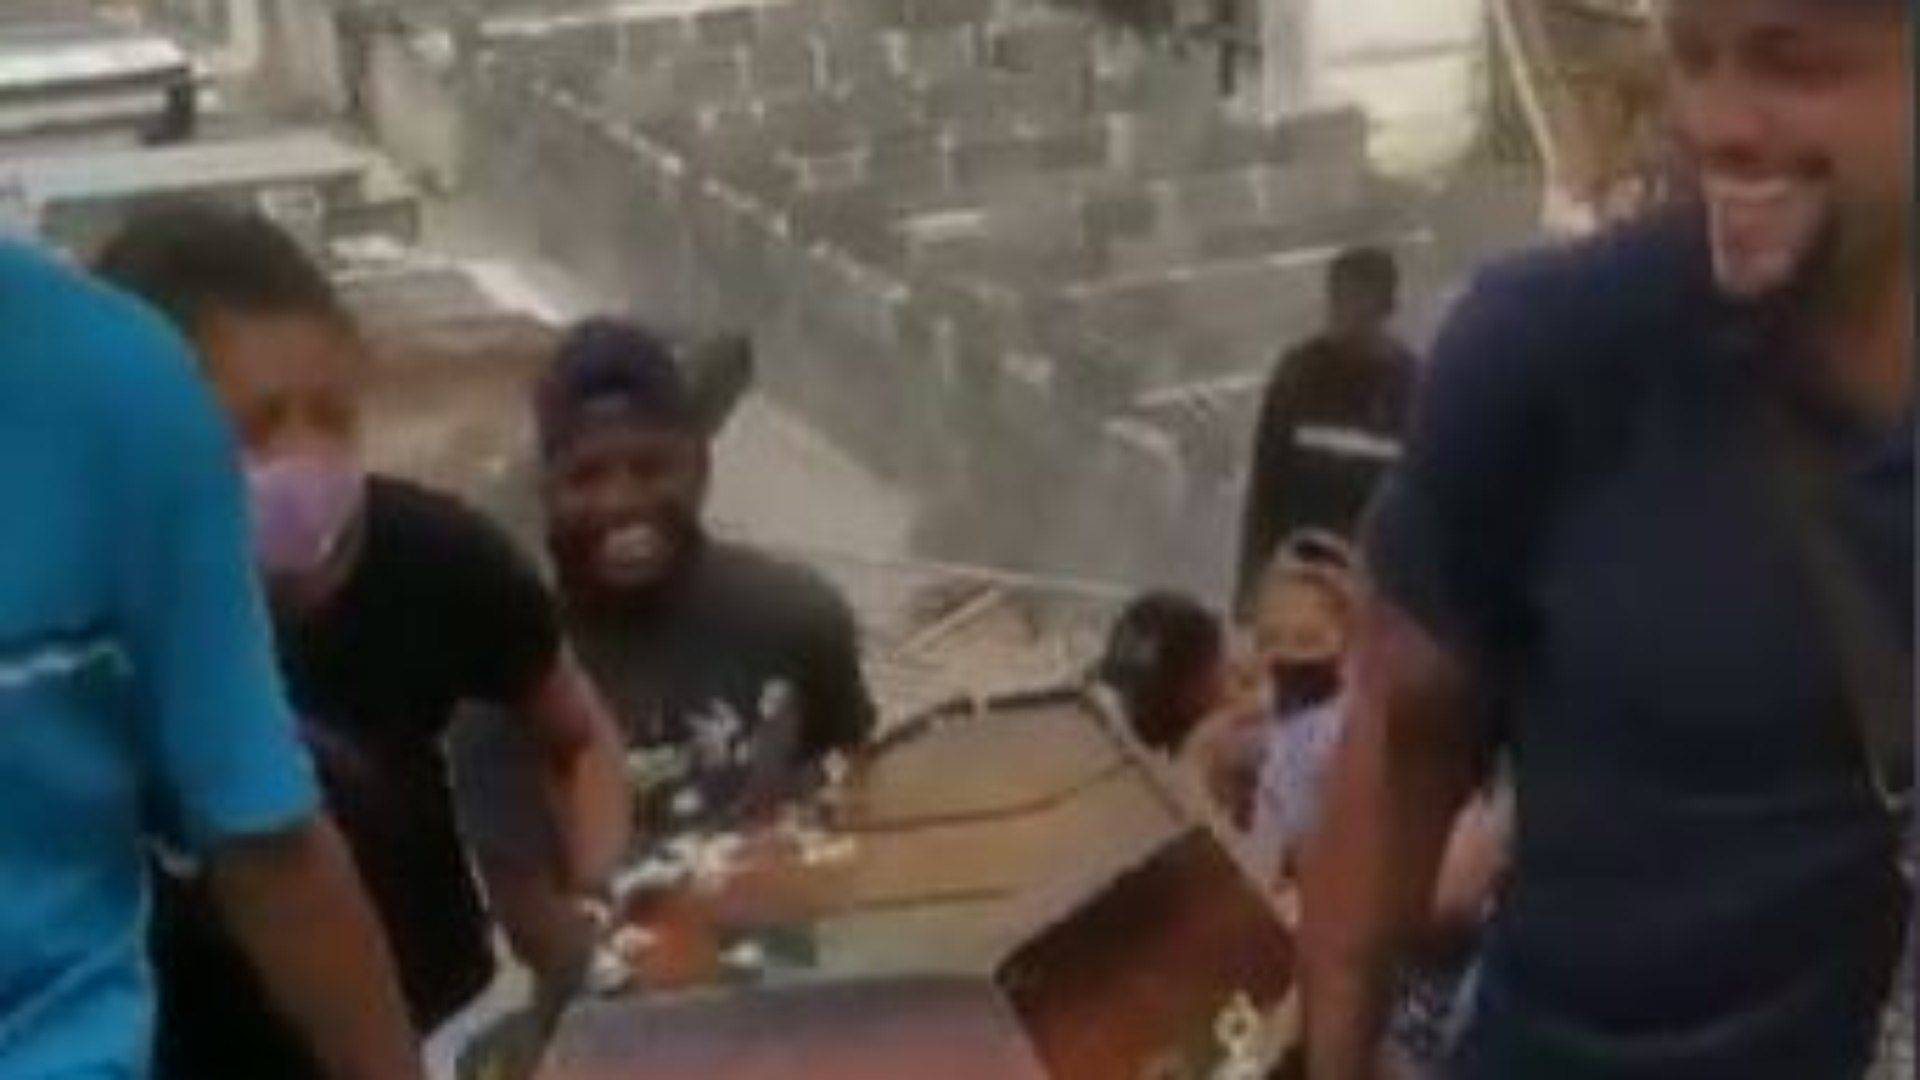 vídeo enterro meme do caixão família Família reproduz 'meme do caixão' em enterro de idoso no Rio; vídeo